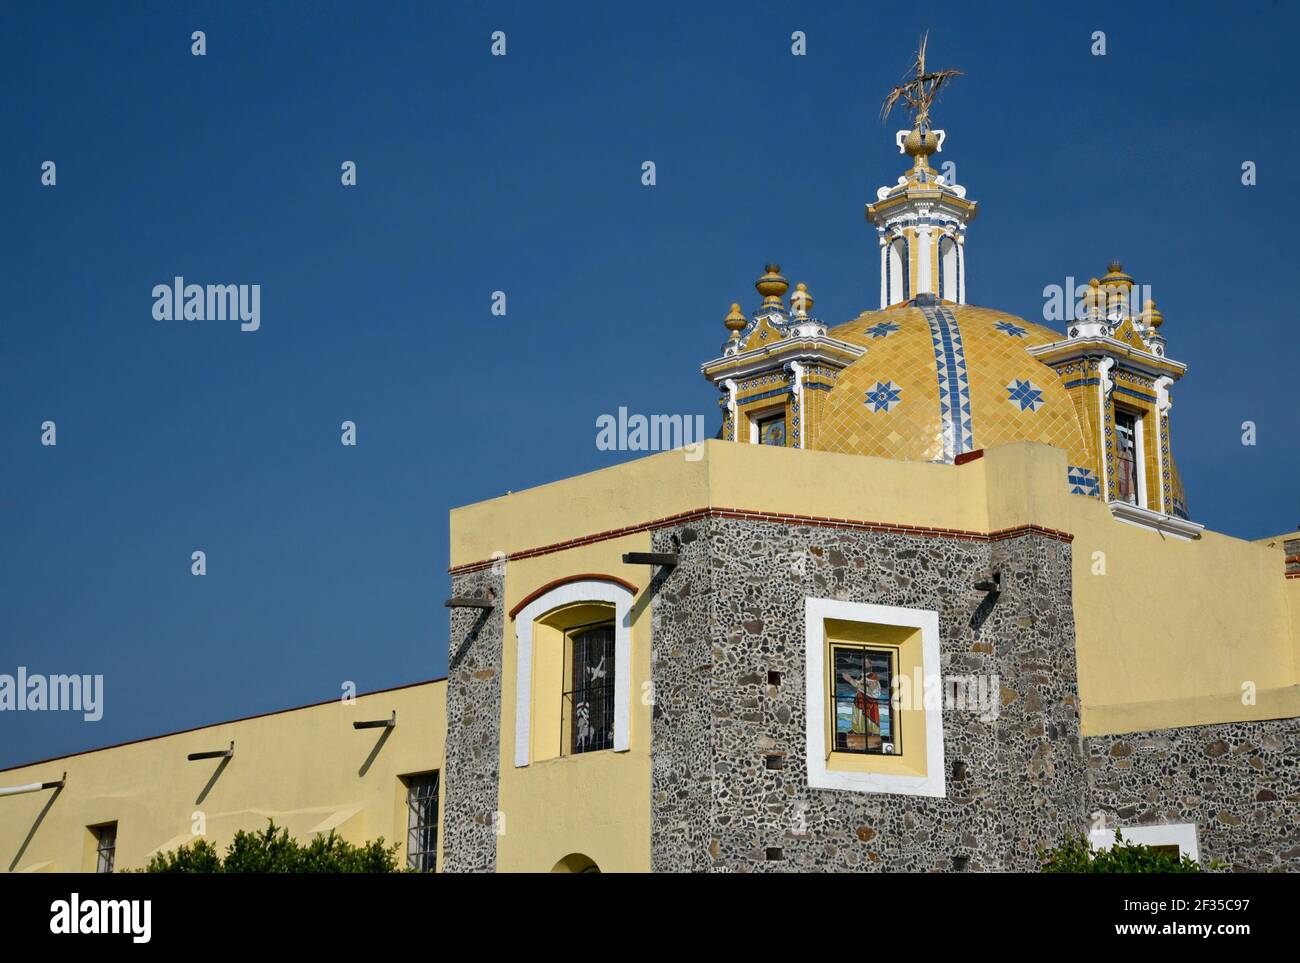 Cupola view of the Baroque church Santa María Tonantzintla in Cholula, Puebla Mexico. Stock Photo